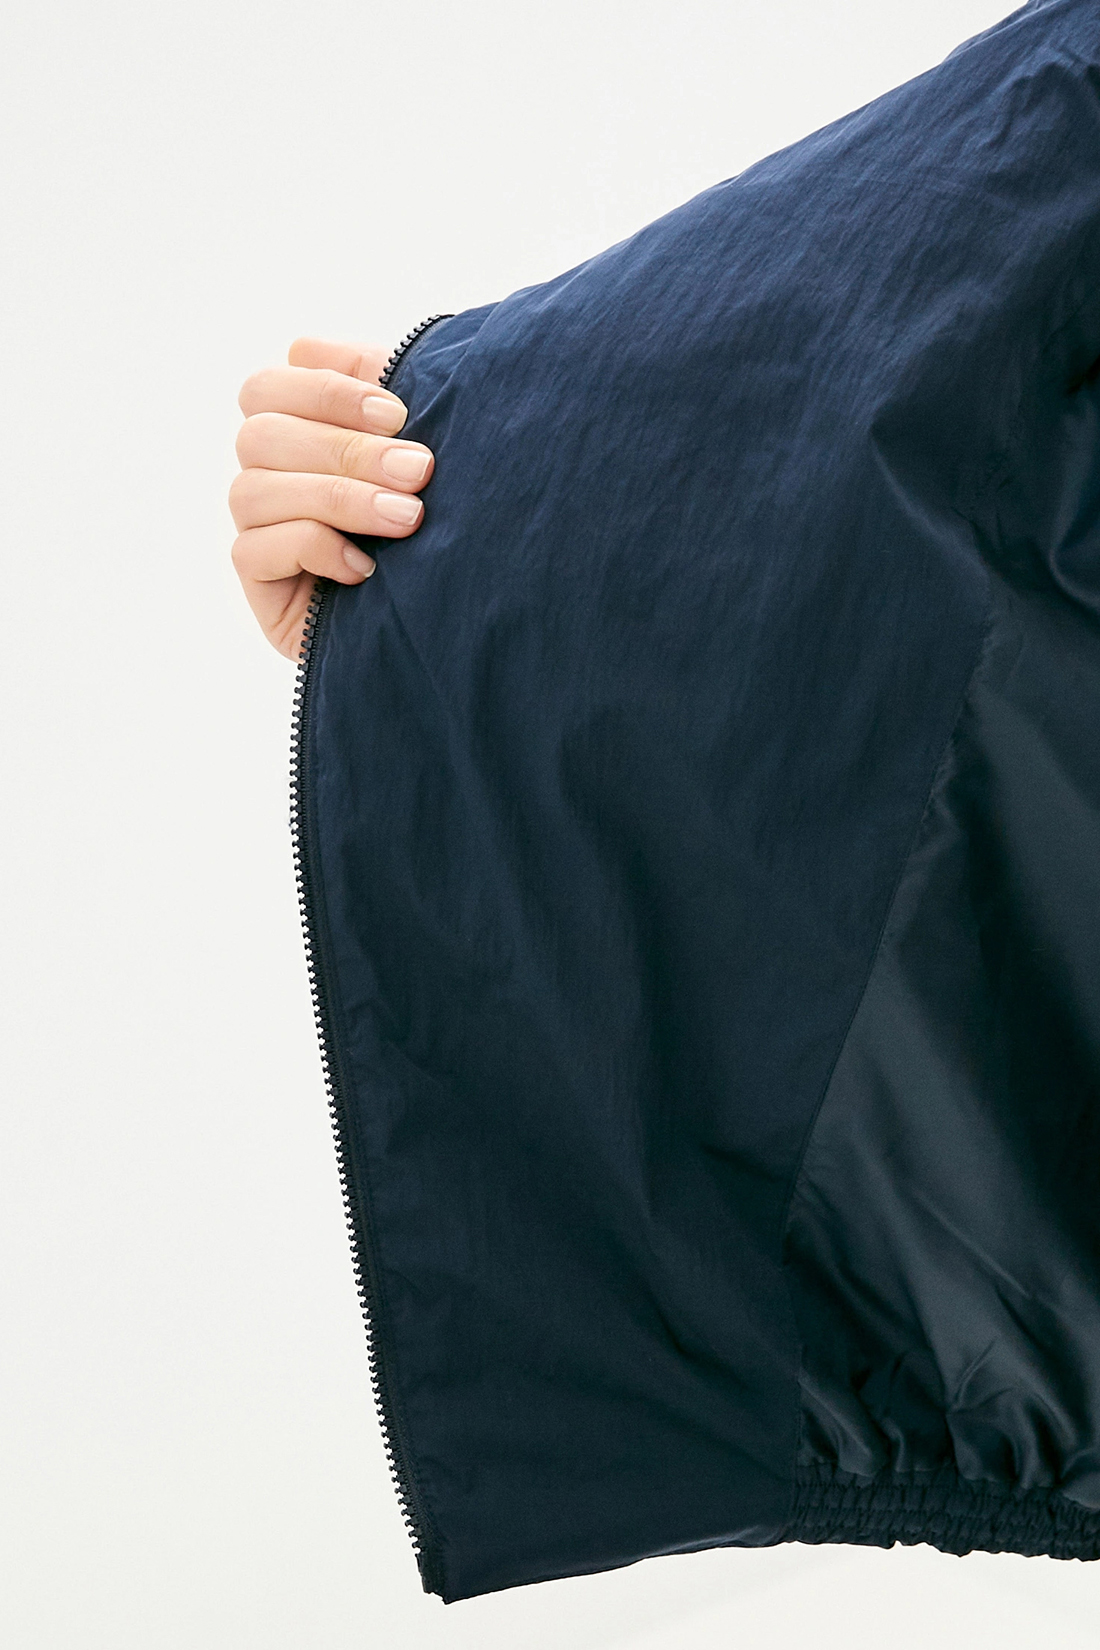 Куртка (арт. baon B030514), размер XL, цвет синий Куртка (арт. baon B030514) - фото 4